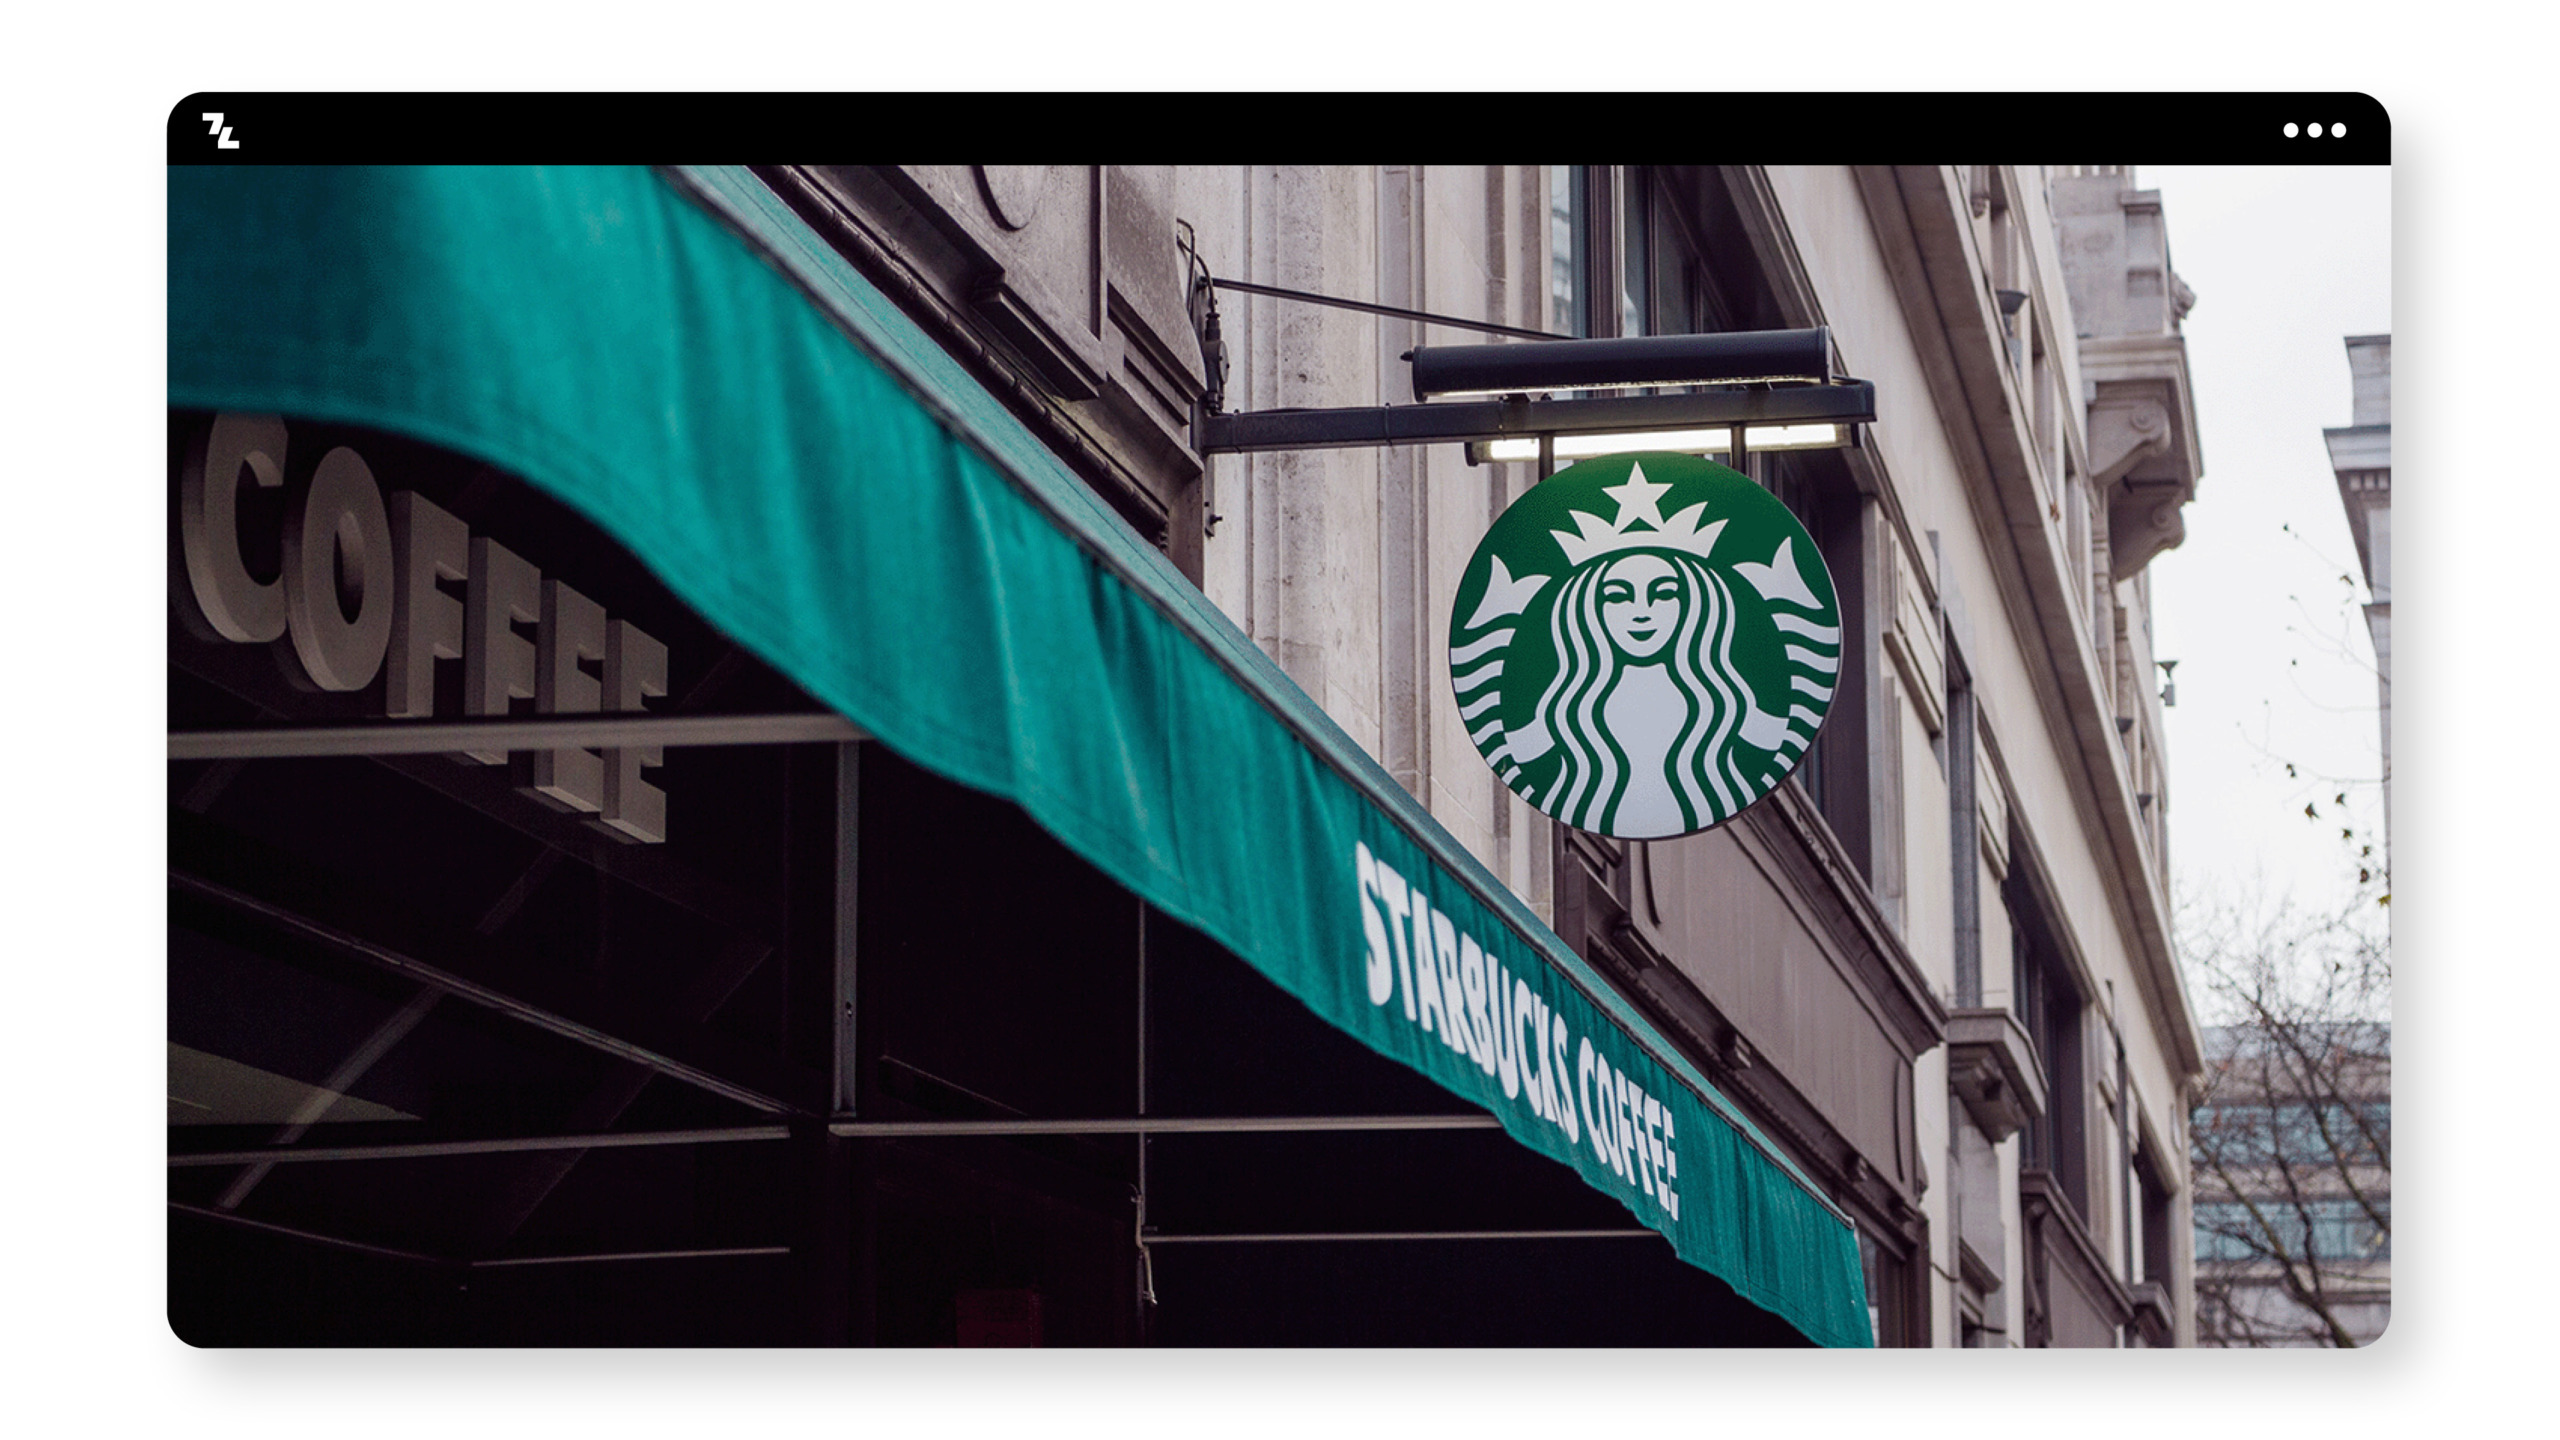 Ein Gebäude mit einem Starbucks-Schild.